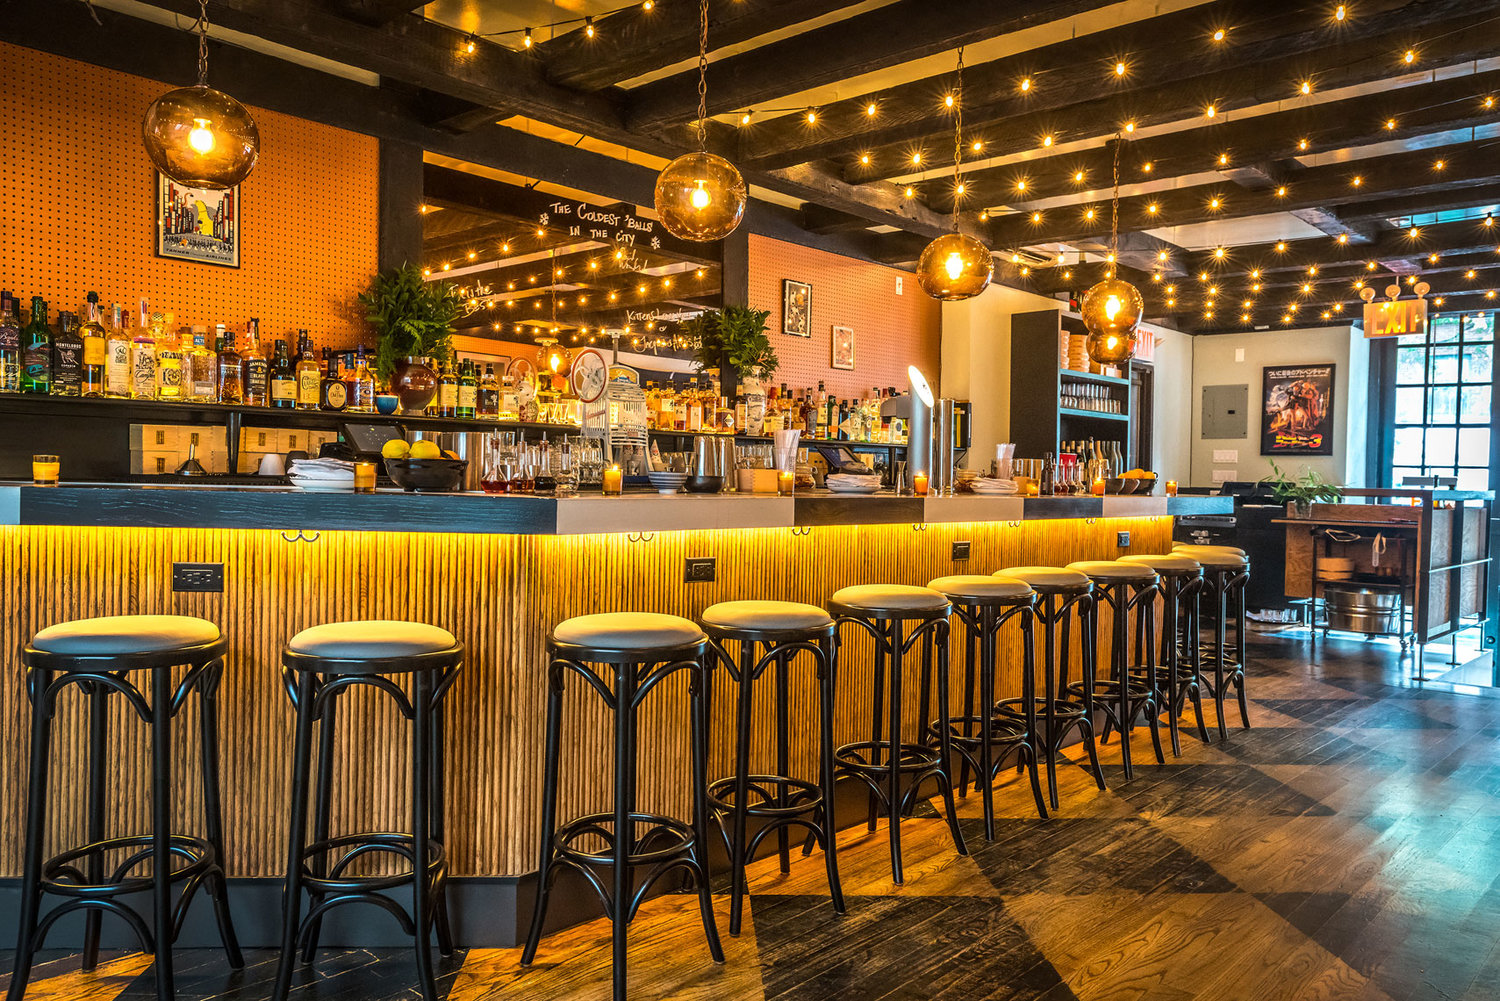 Katana Kitten, New York. New York là thành phố có nhiều quán bar nhất trong top 50. Katana Kitchen, vị trí thứ 9, là một trong sáu quán bar của New York trong danh sách.